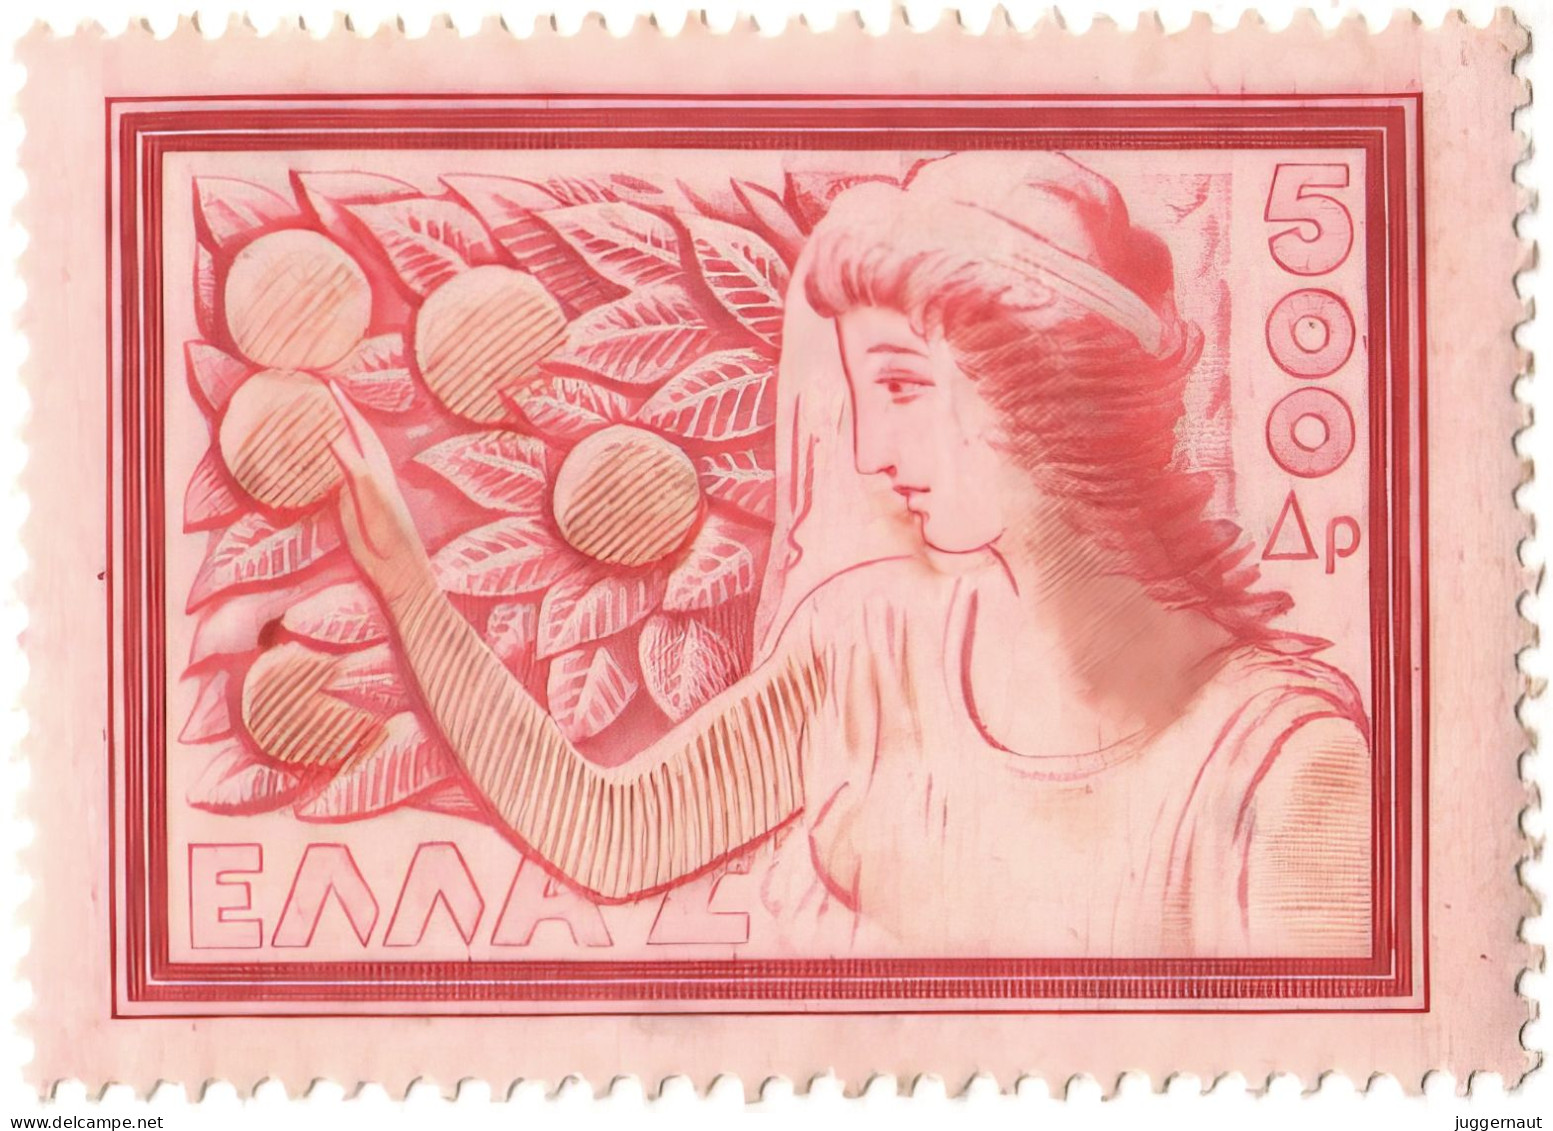 Oranges 500d Postage Stamp Greece 1953 MNH - Mythologie